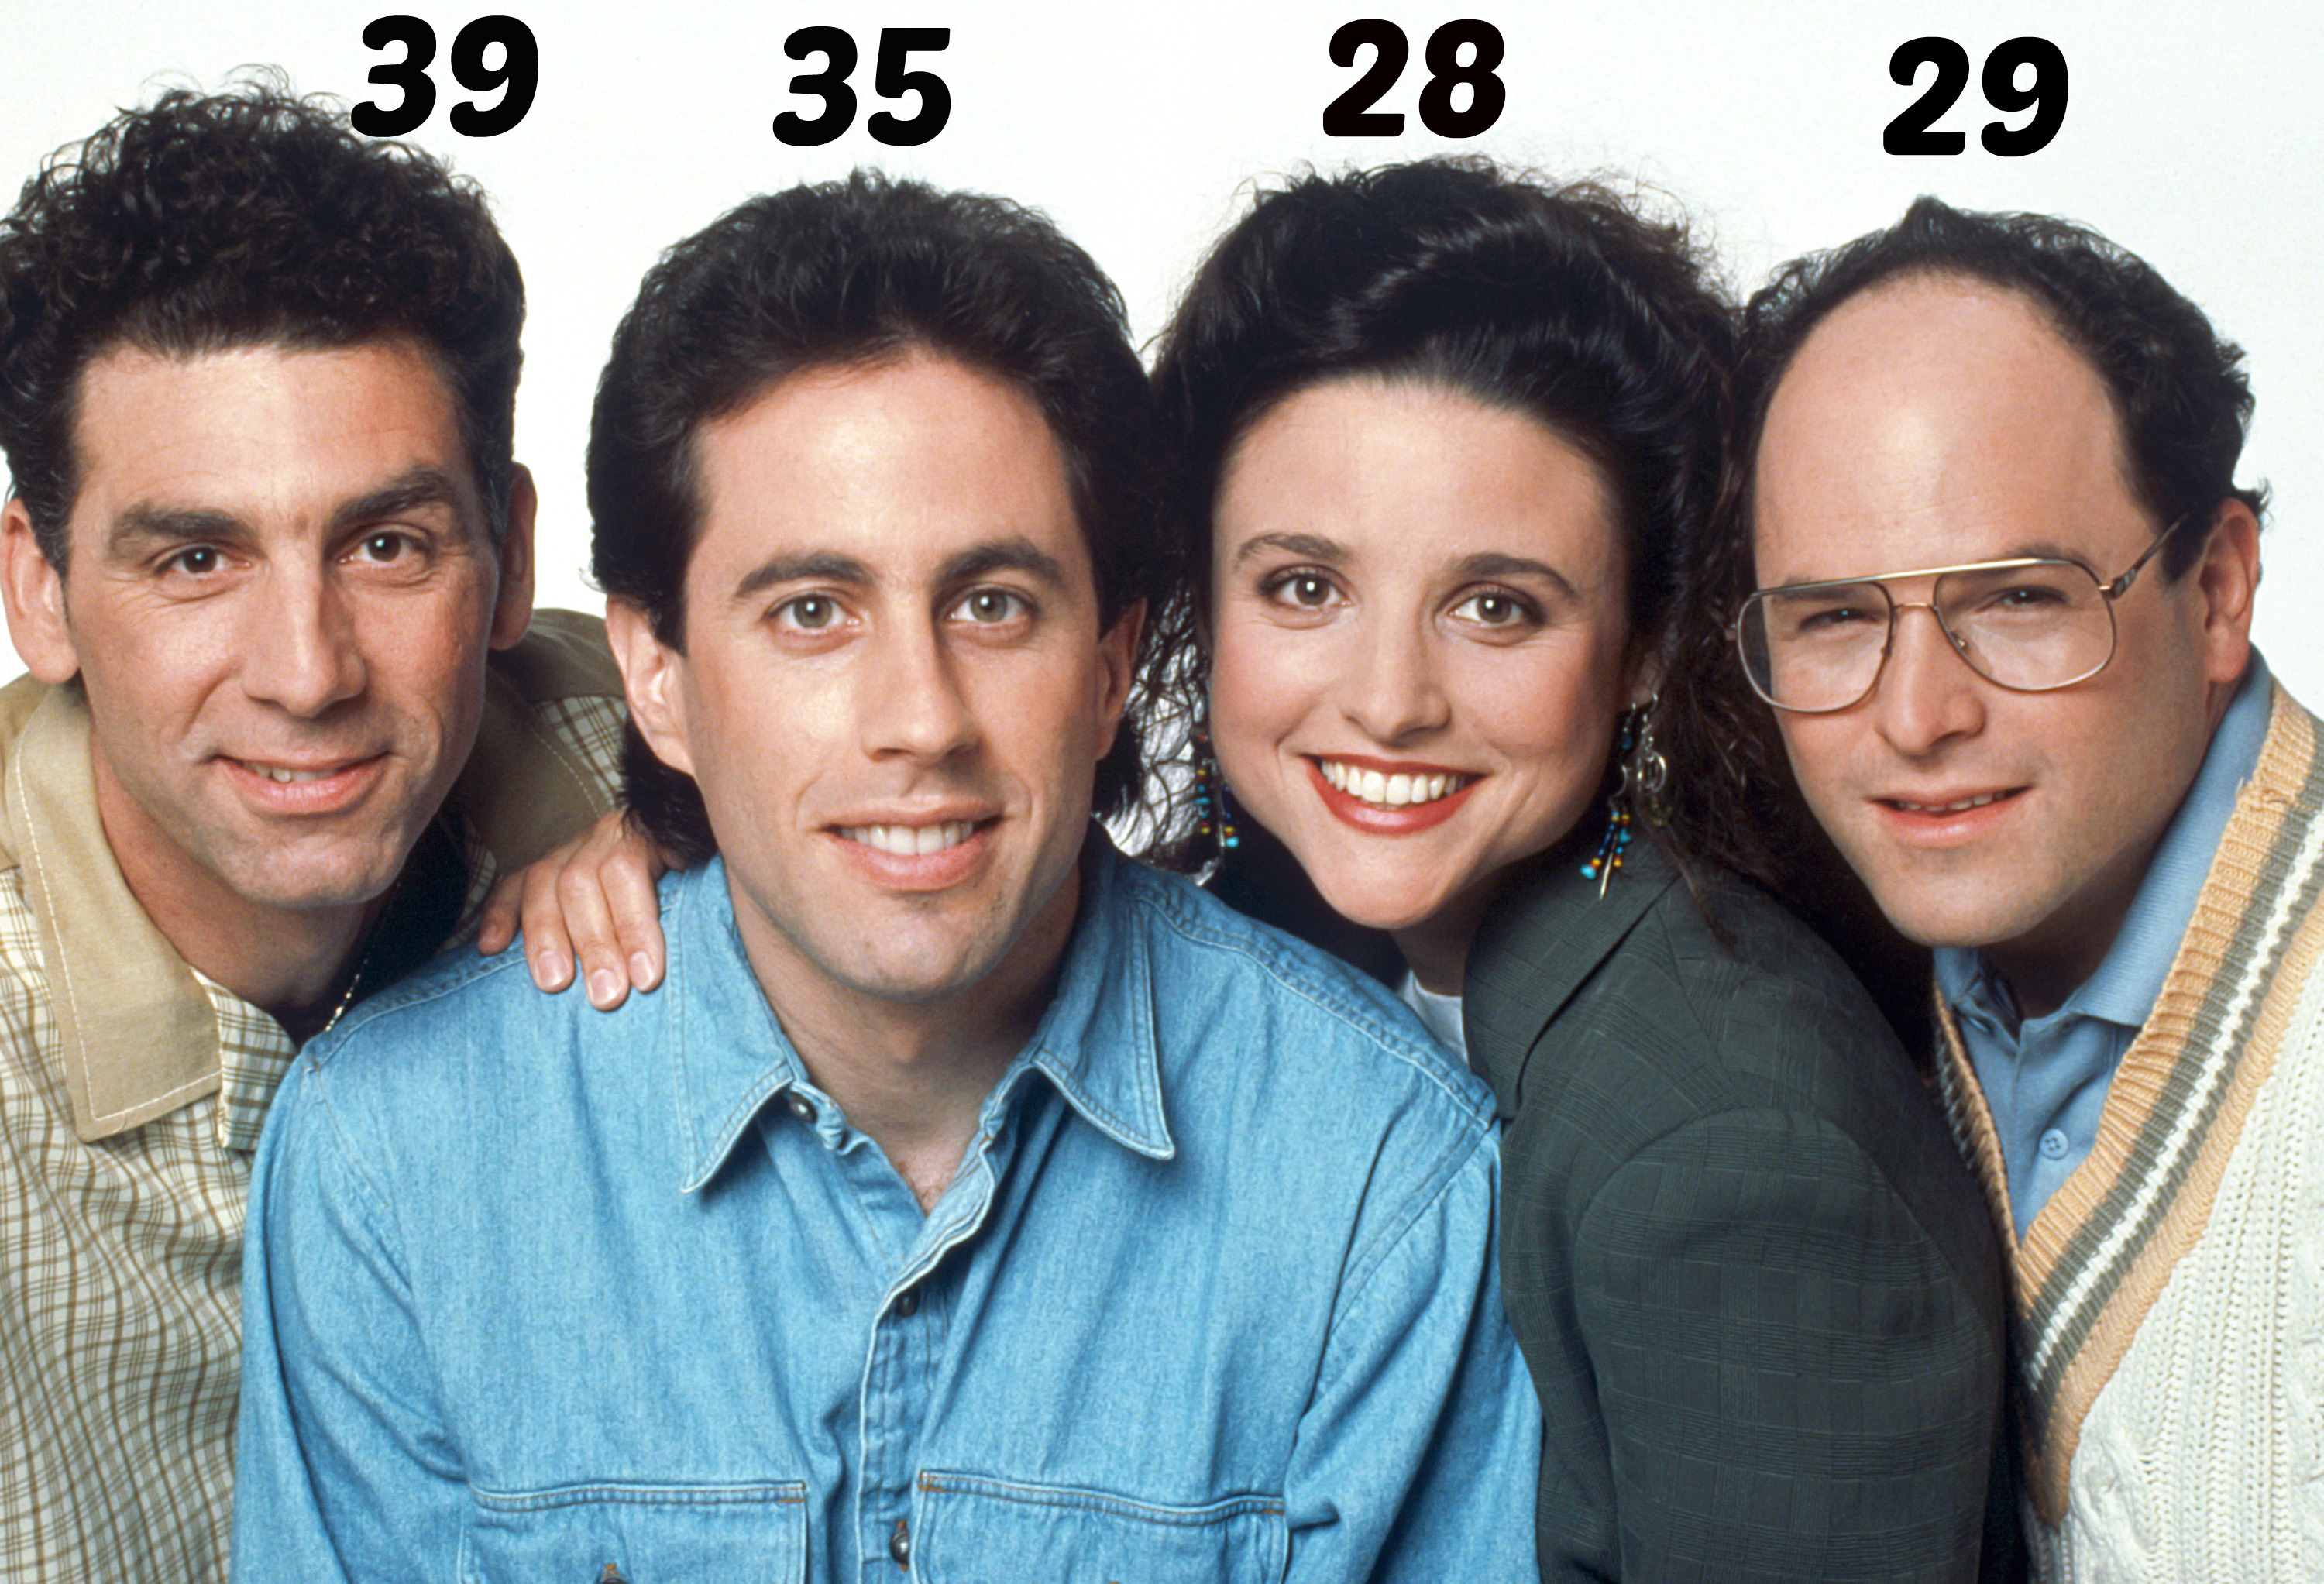 Seinfeld Actors And Actresses Names - PELAJARAN